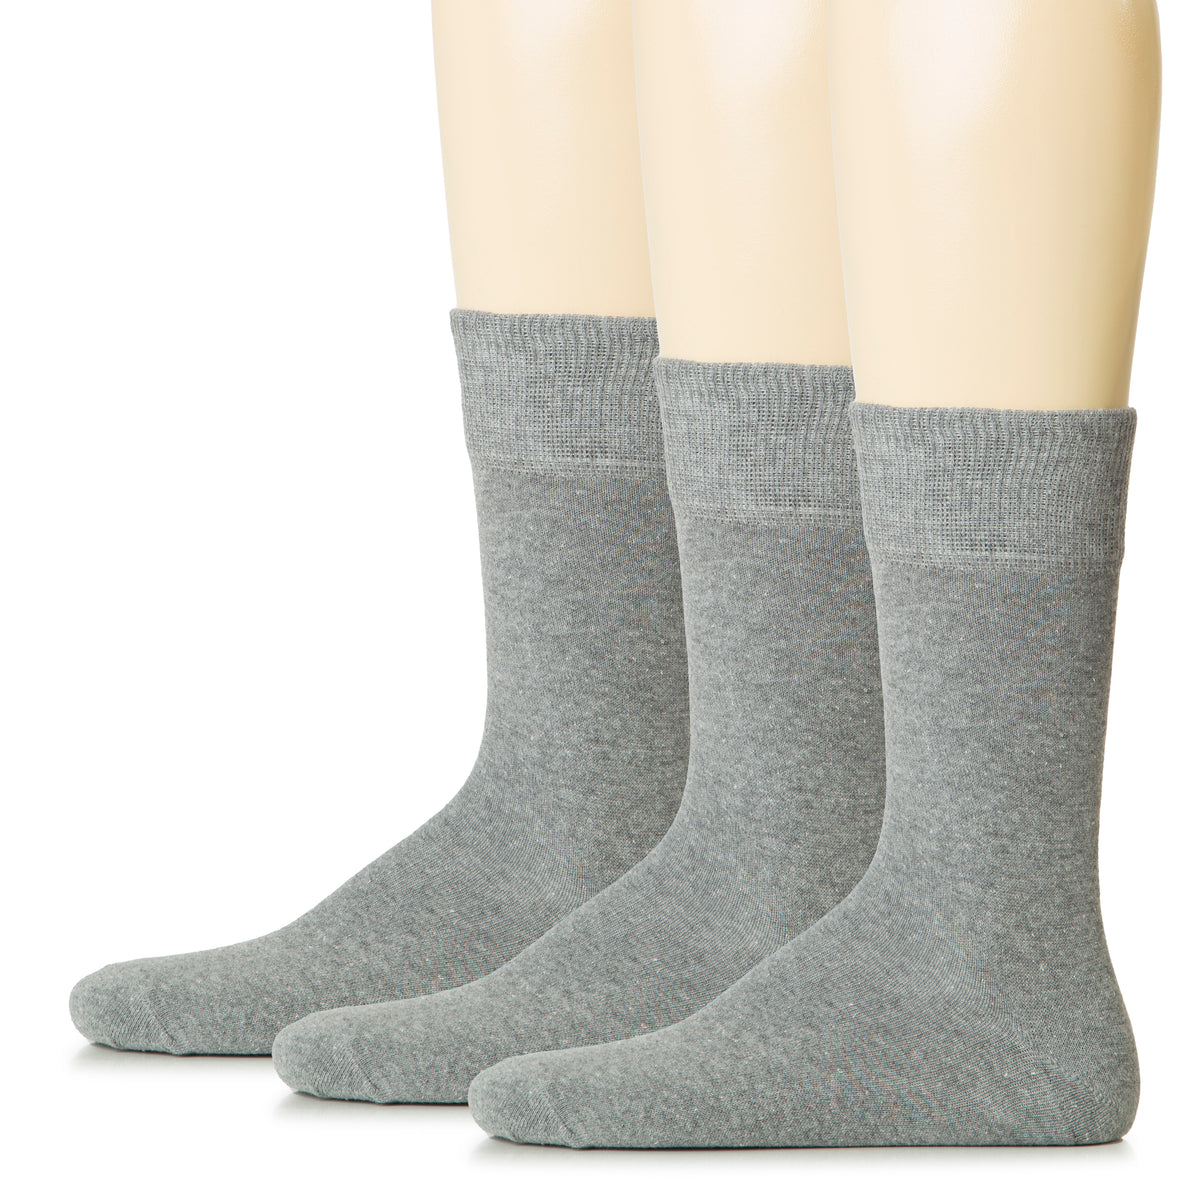 Hugh Ugoli Men Cotton Dress Socks XL / L / M / S Sizes, 3 Pairs | Shoe Size: 8-10 | Gray